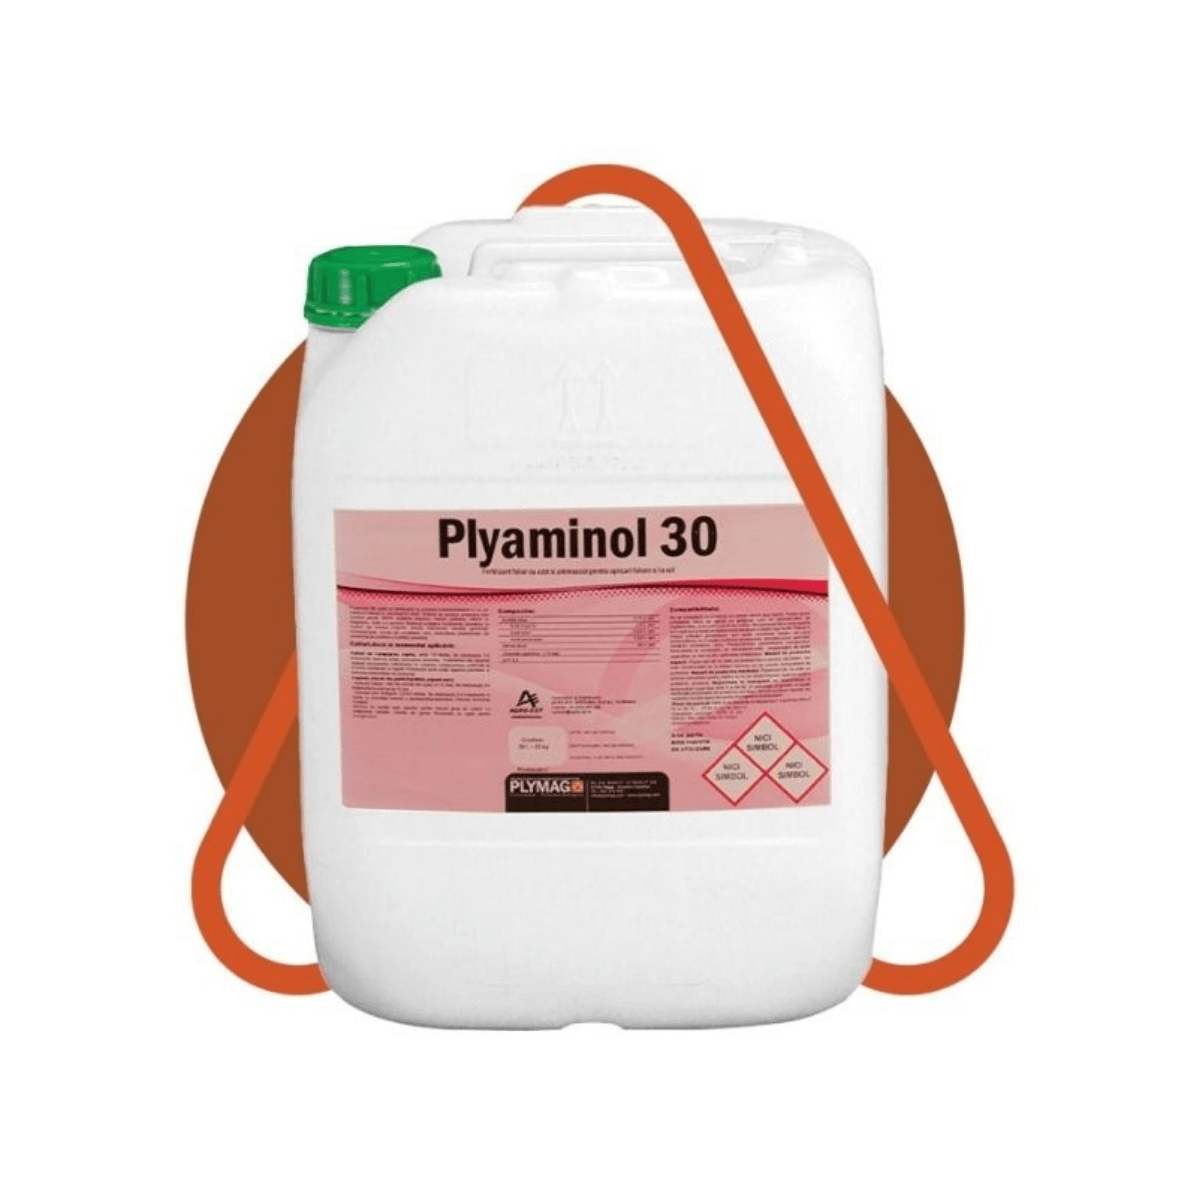 Biostimulatori - Biostimulator cu aminoacizi liberi 30% Plyaminol 30, 20 L, hectarul.ro